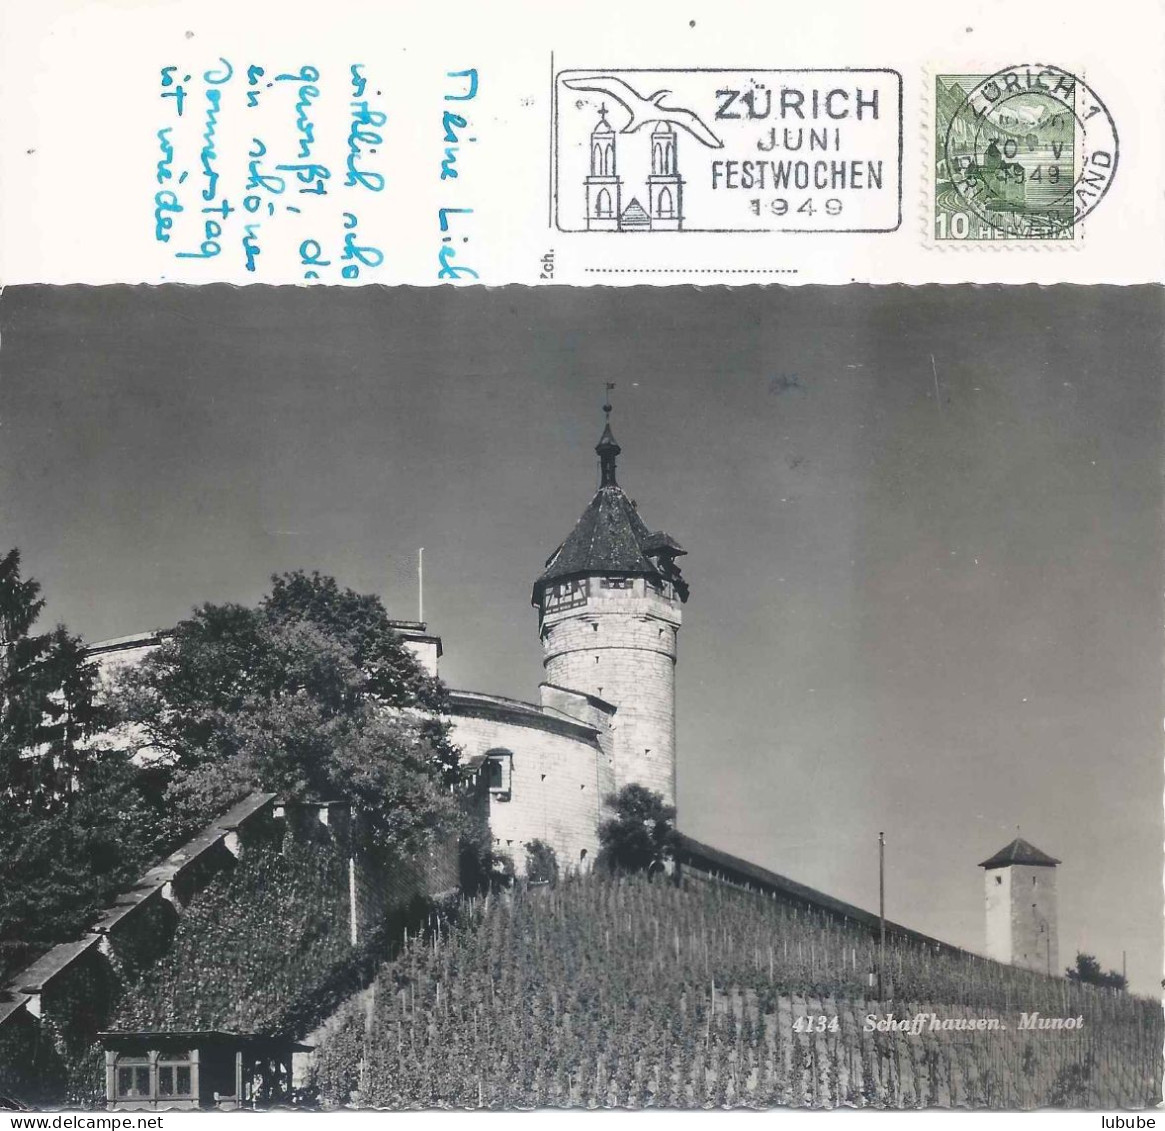 Schaffhausen - Munot Mit Rebberg  (Flagge: Juni Festwochen Zürich)         1949 - Schaffhouse